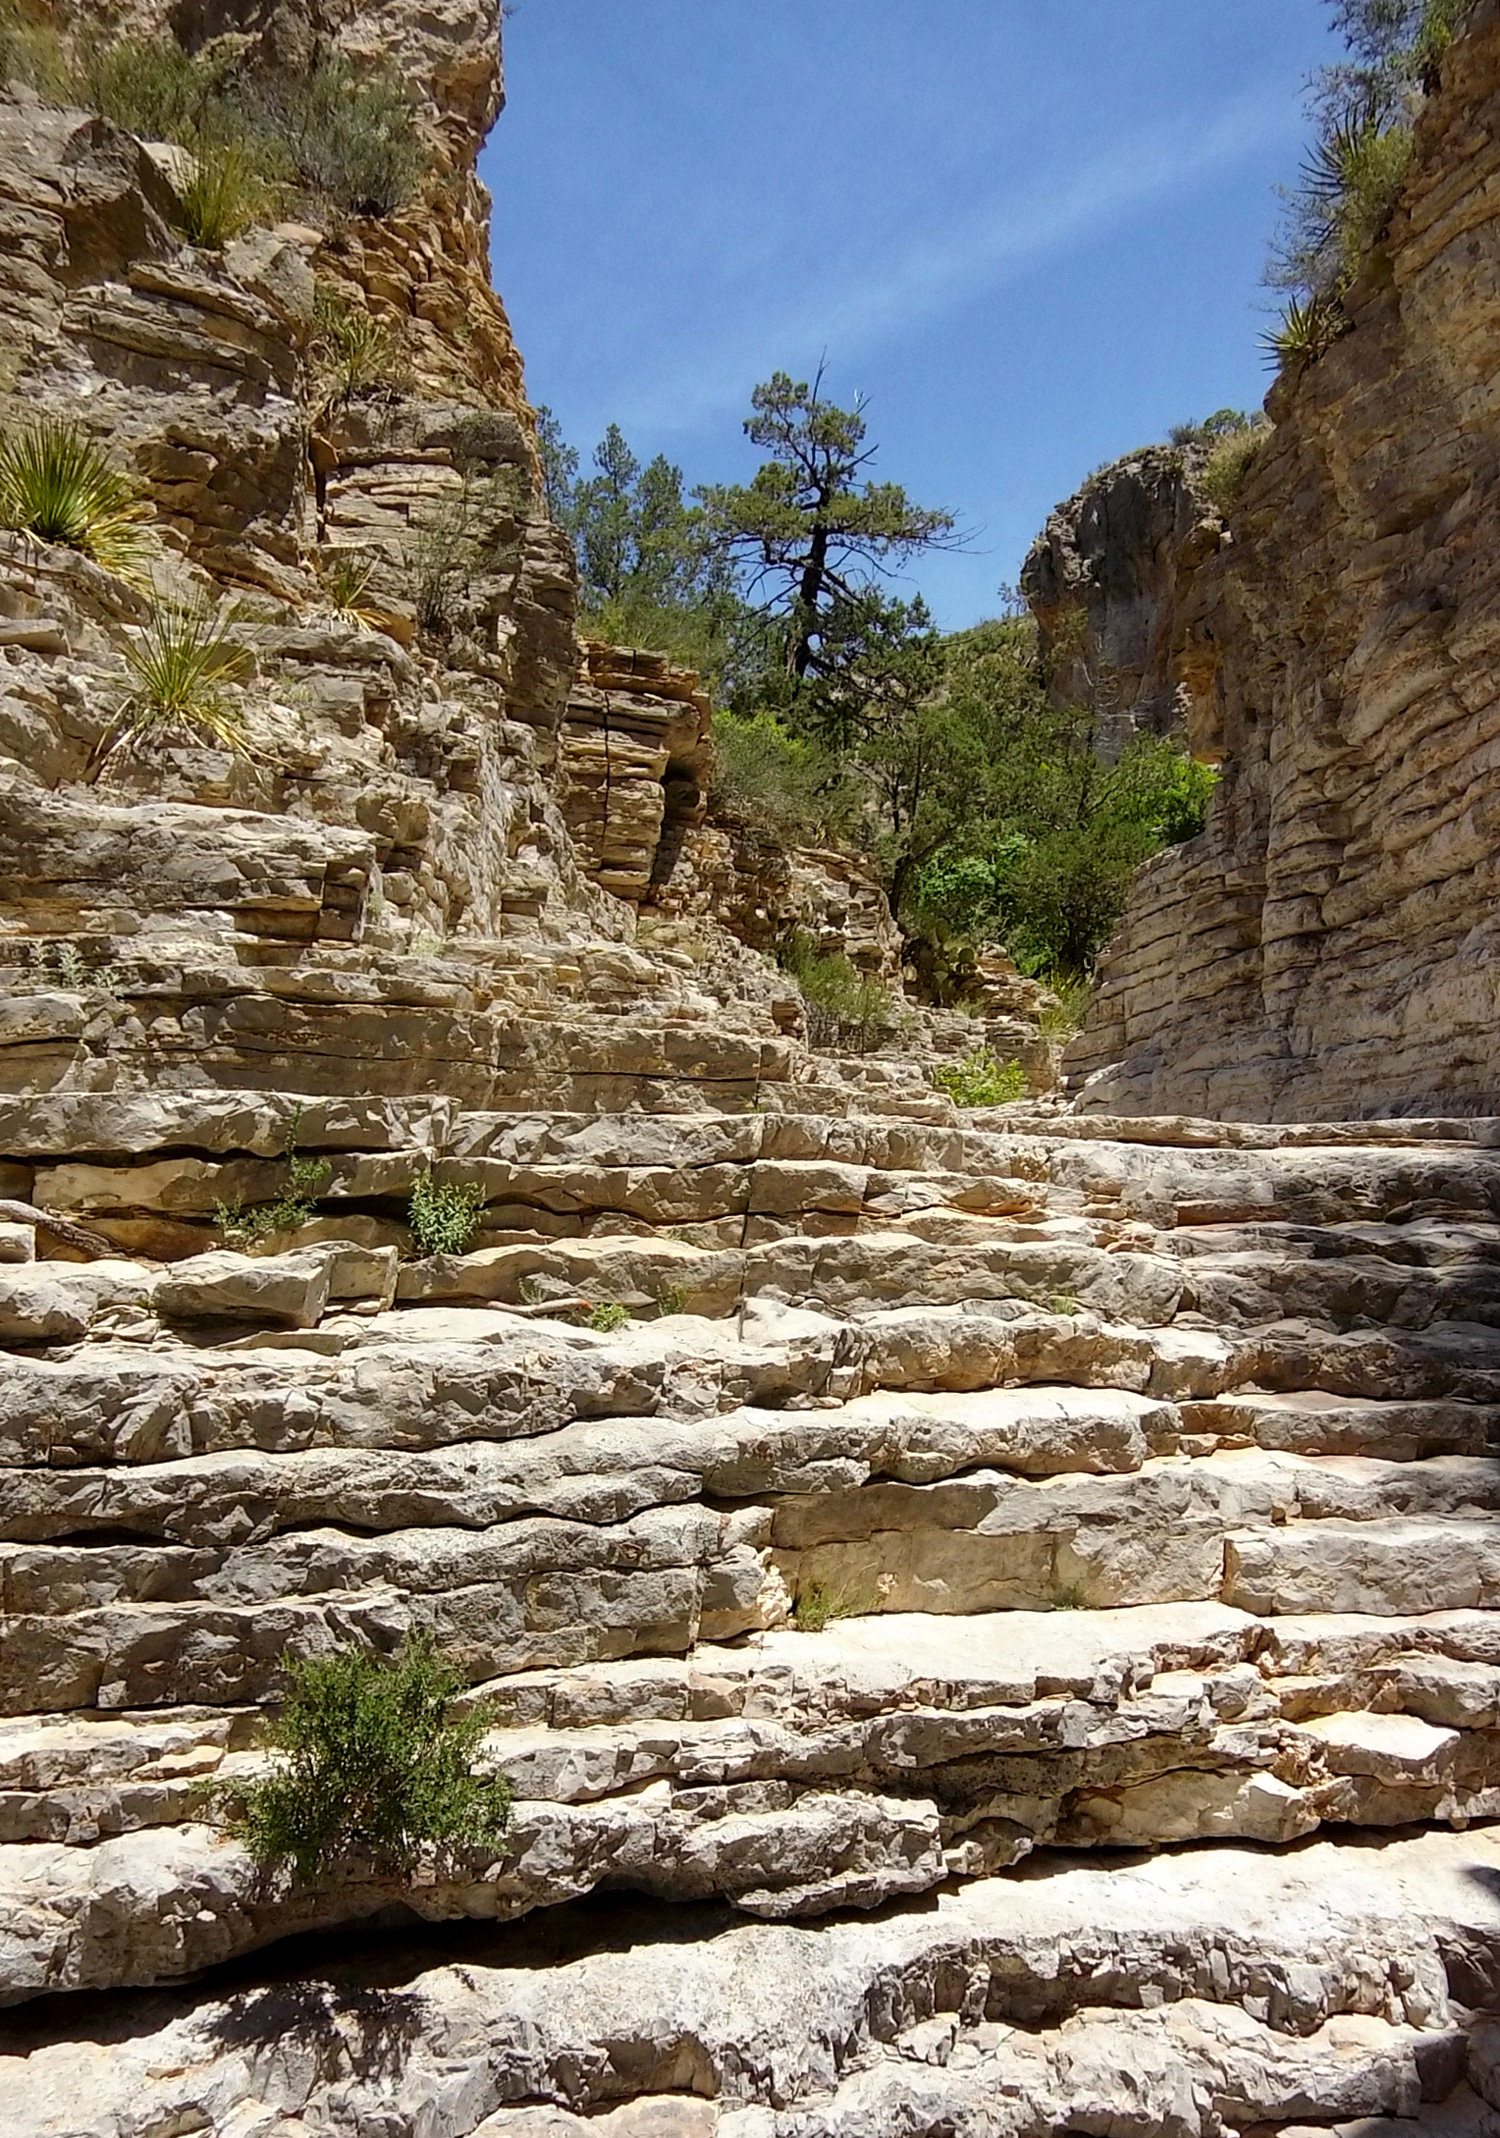 Layered rocks like a staircase into a narrow canyon of similar layered walls